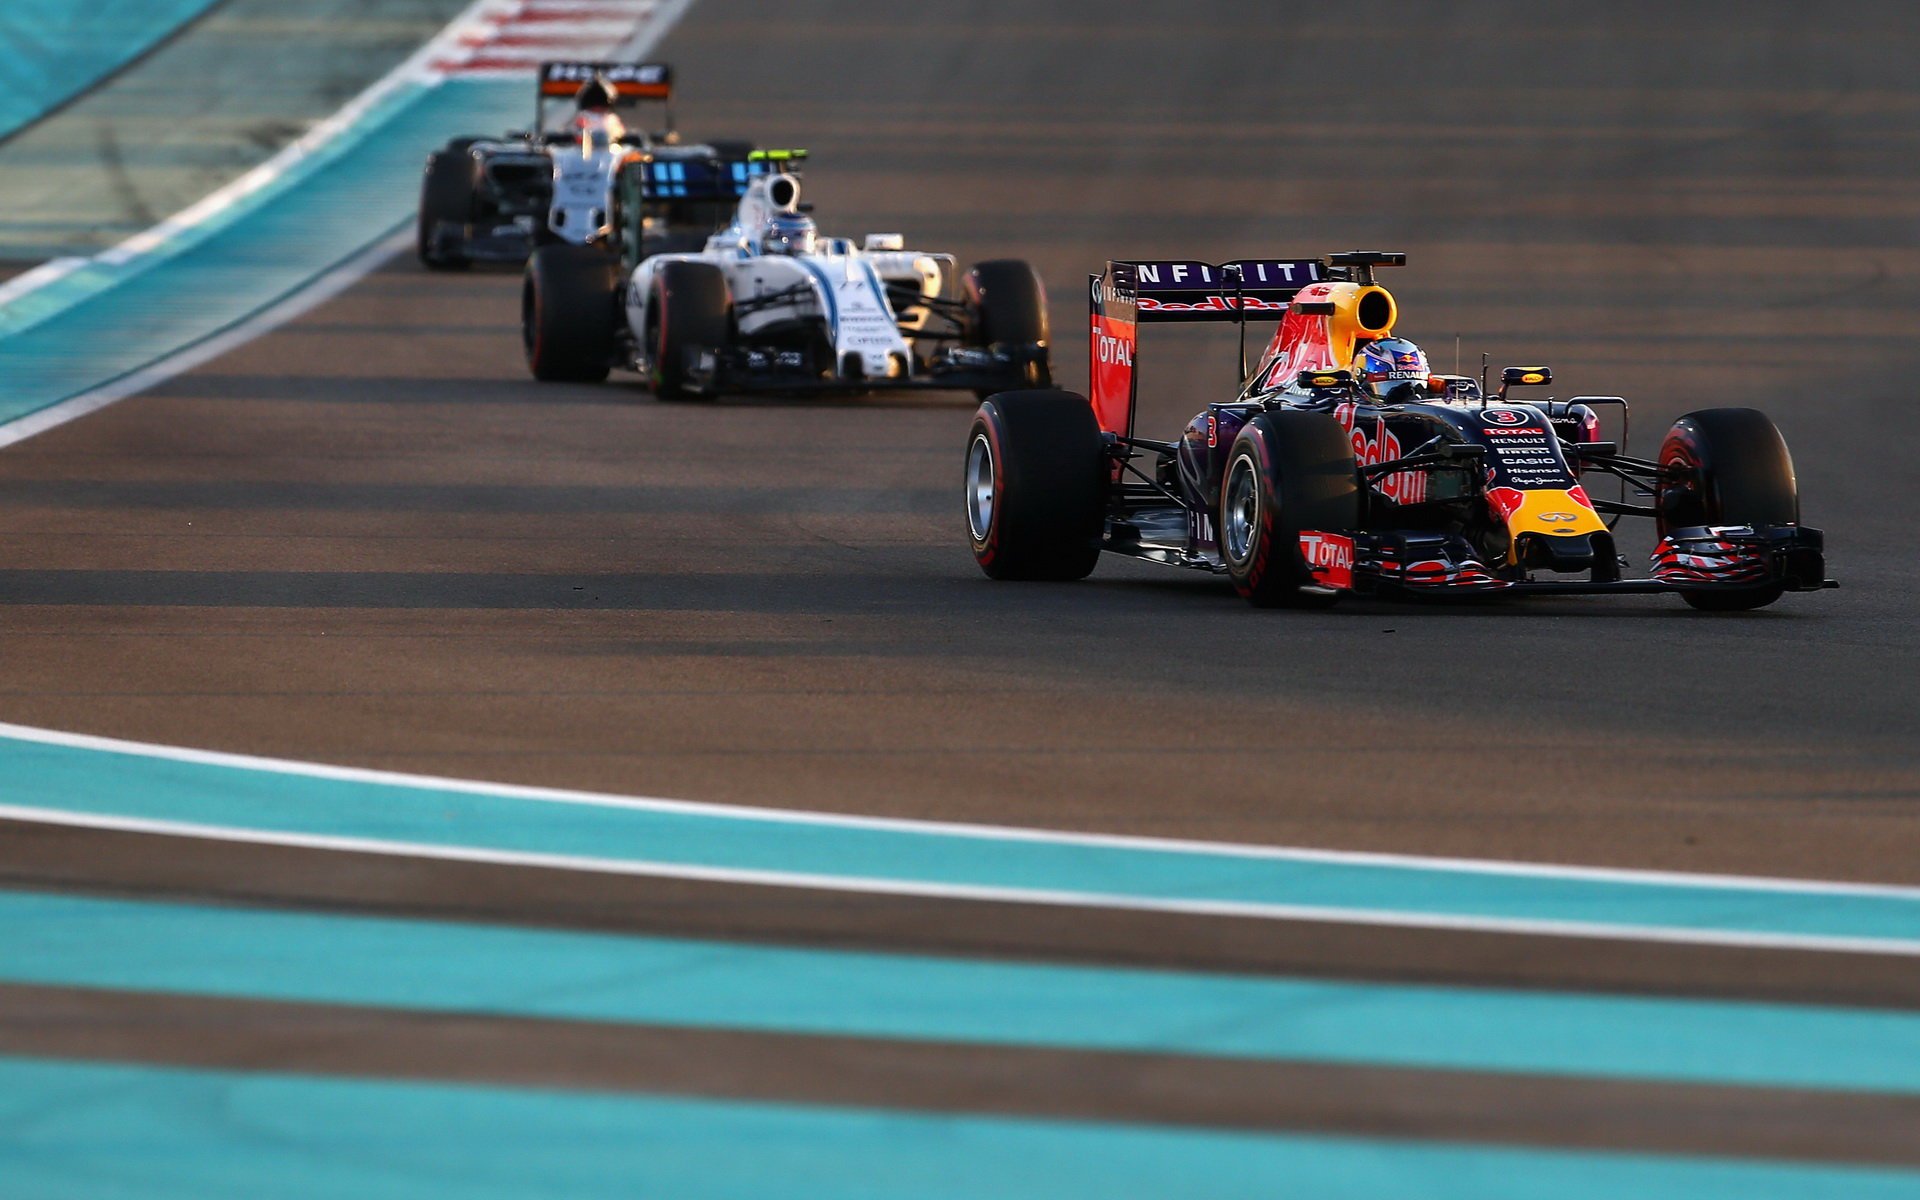 Daniel Ricciardo a Valtteri Bottas v Abú Zabí